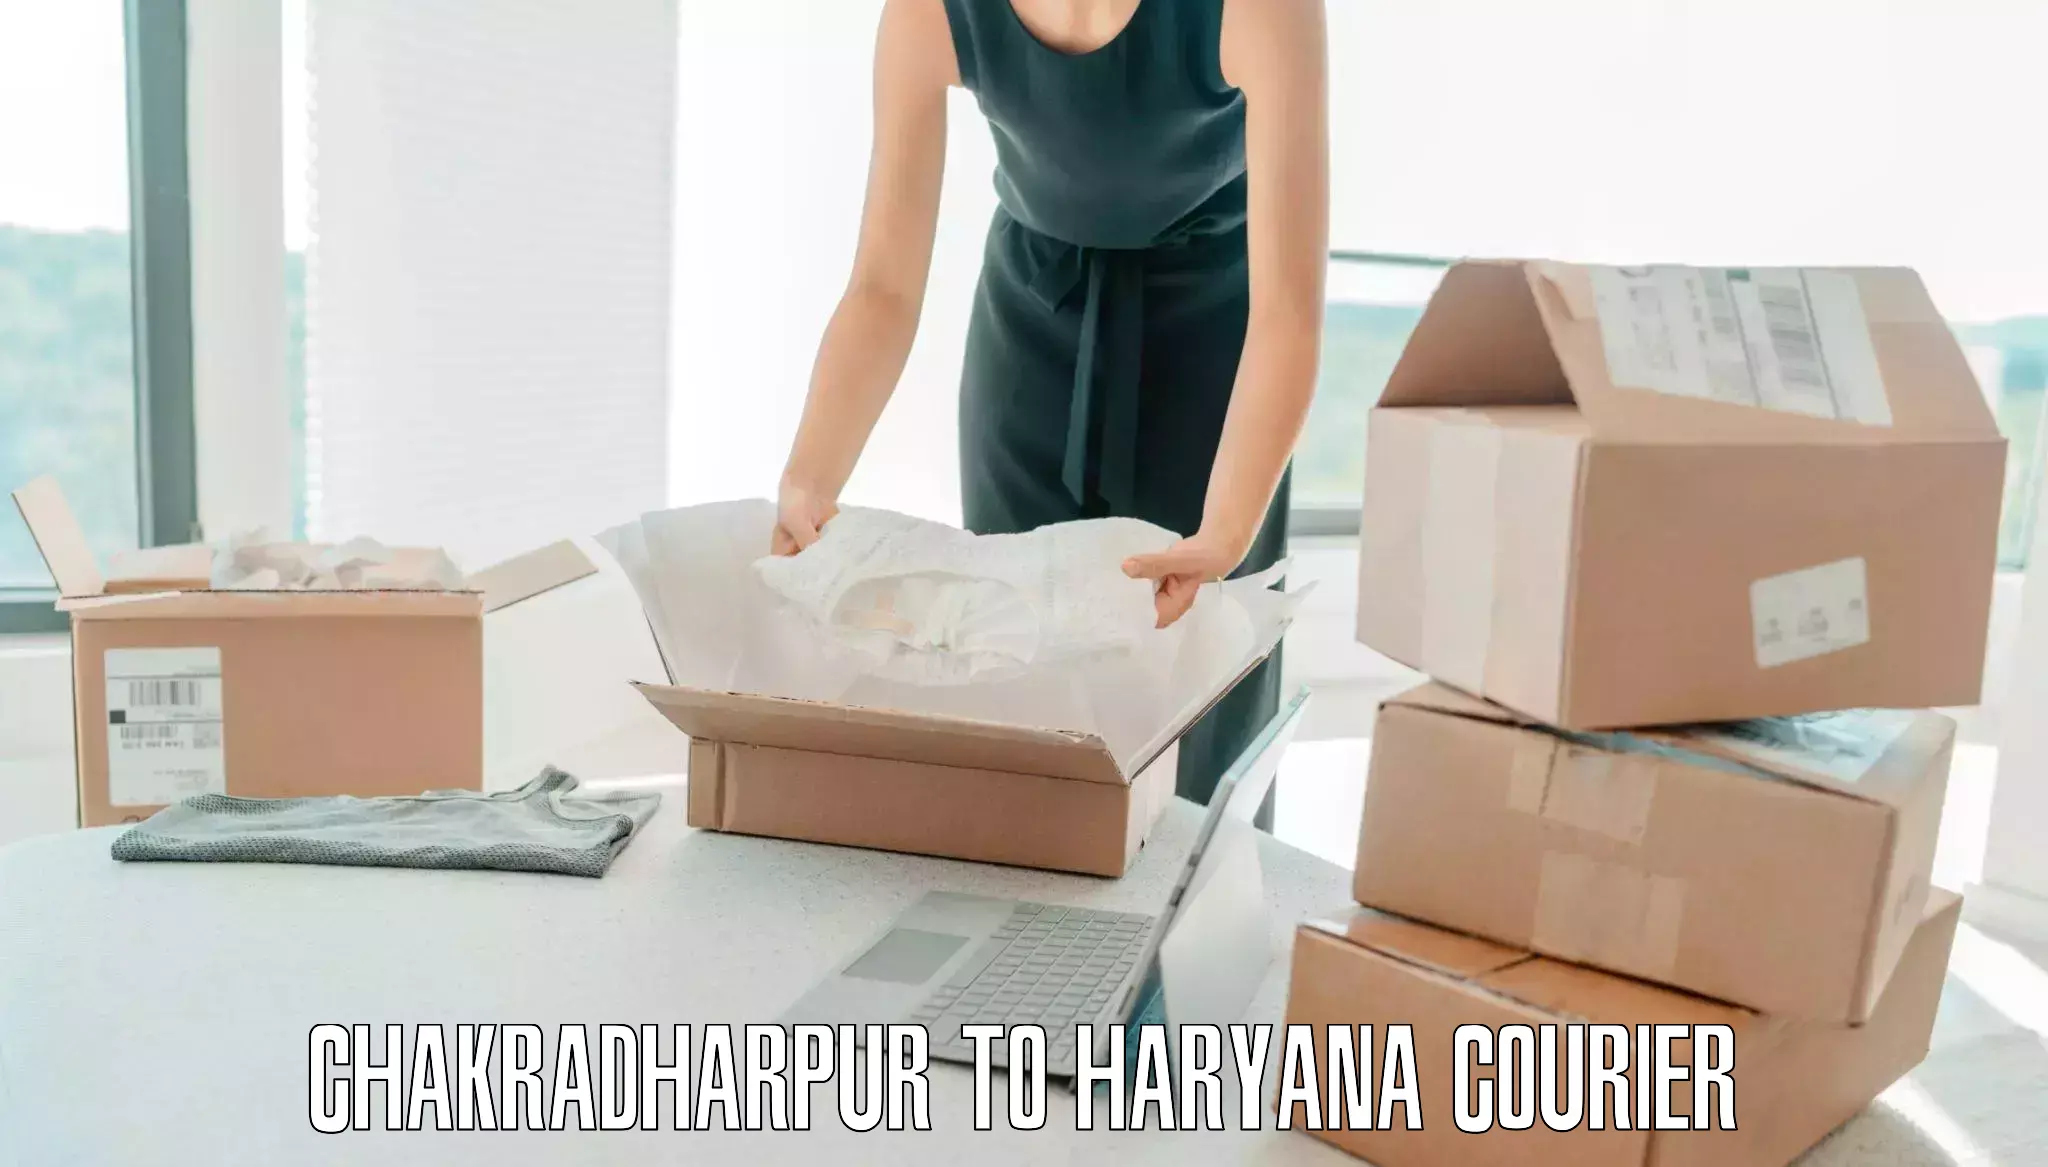 Urgent luggage shipment Chakradharpur to Nuh